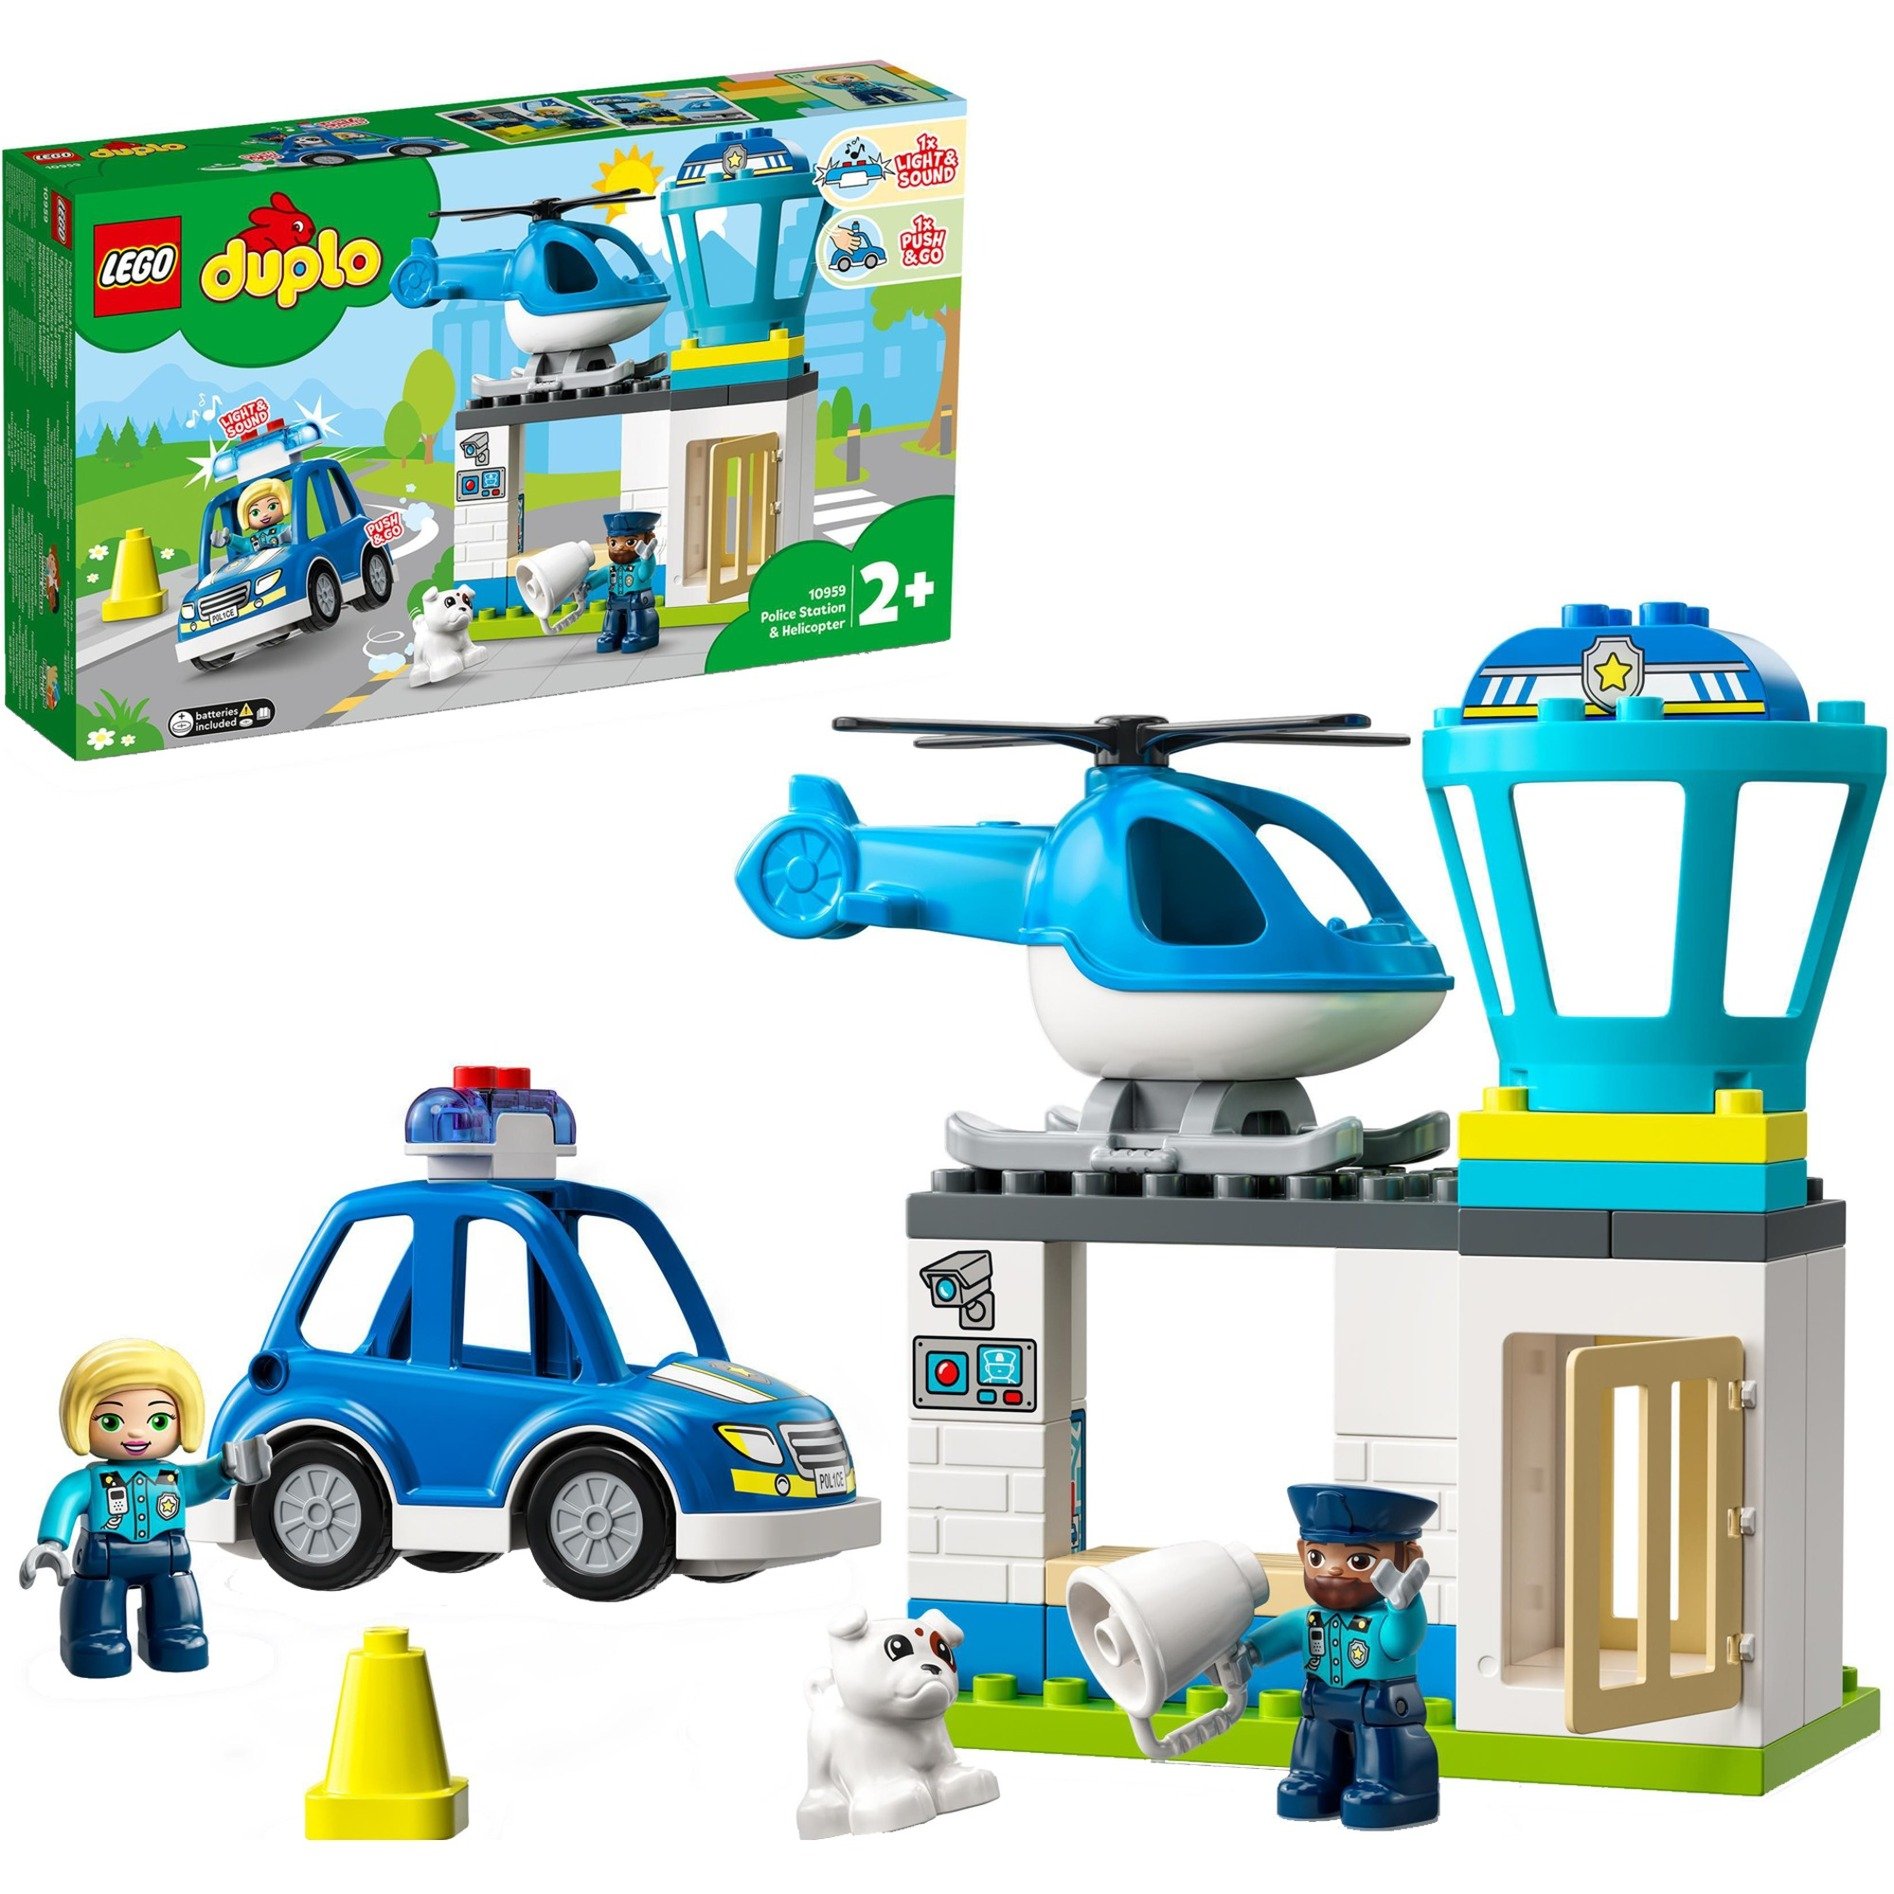 10959 DUPLO Polizeistation mit Hubschrauber und Polizeiauto, Konstruktionsspielzeug von Lego